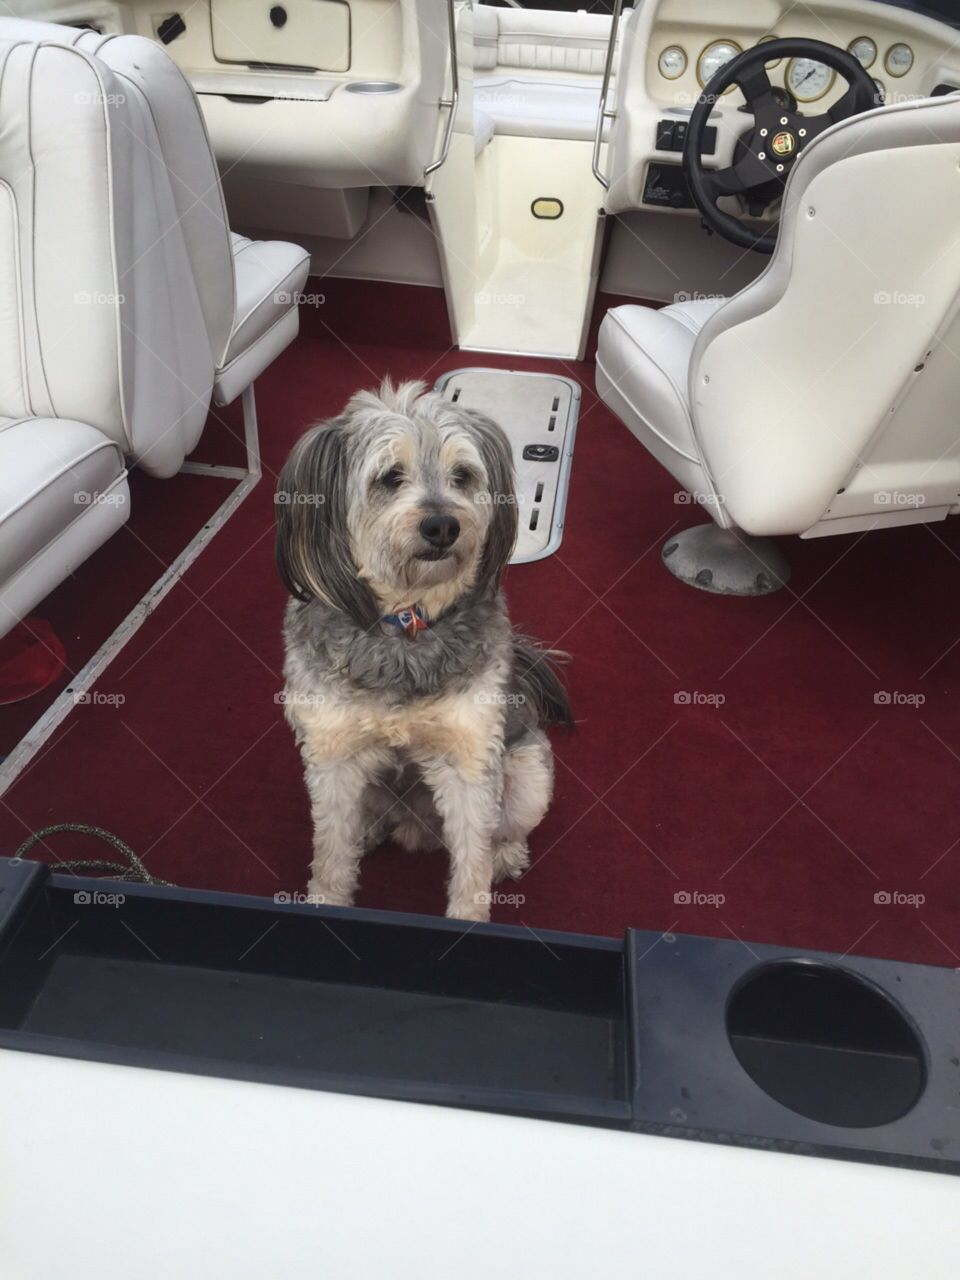 Dog in boat